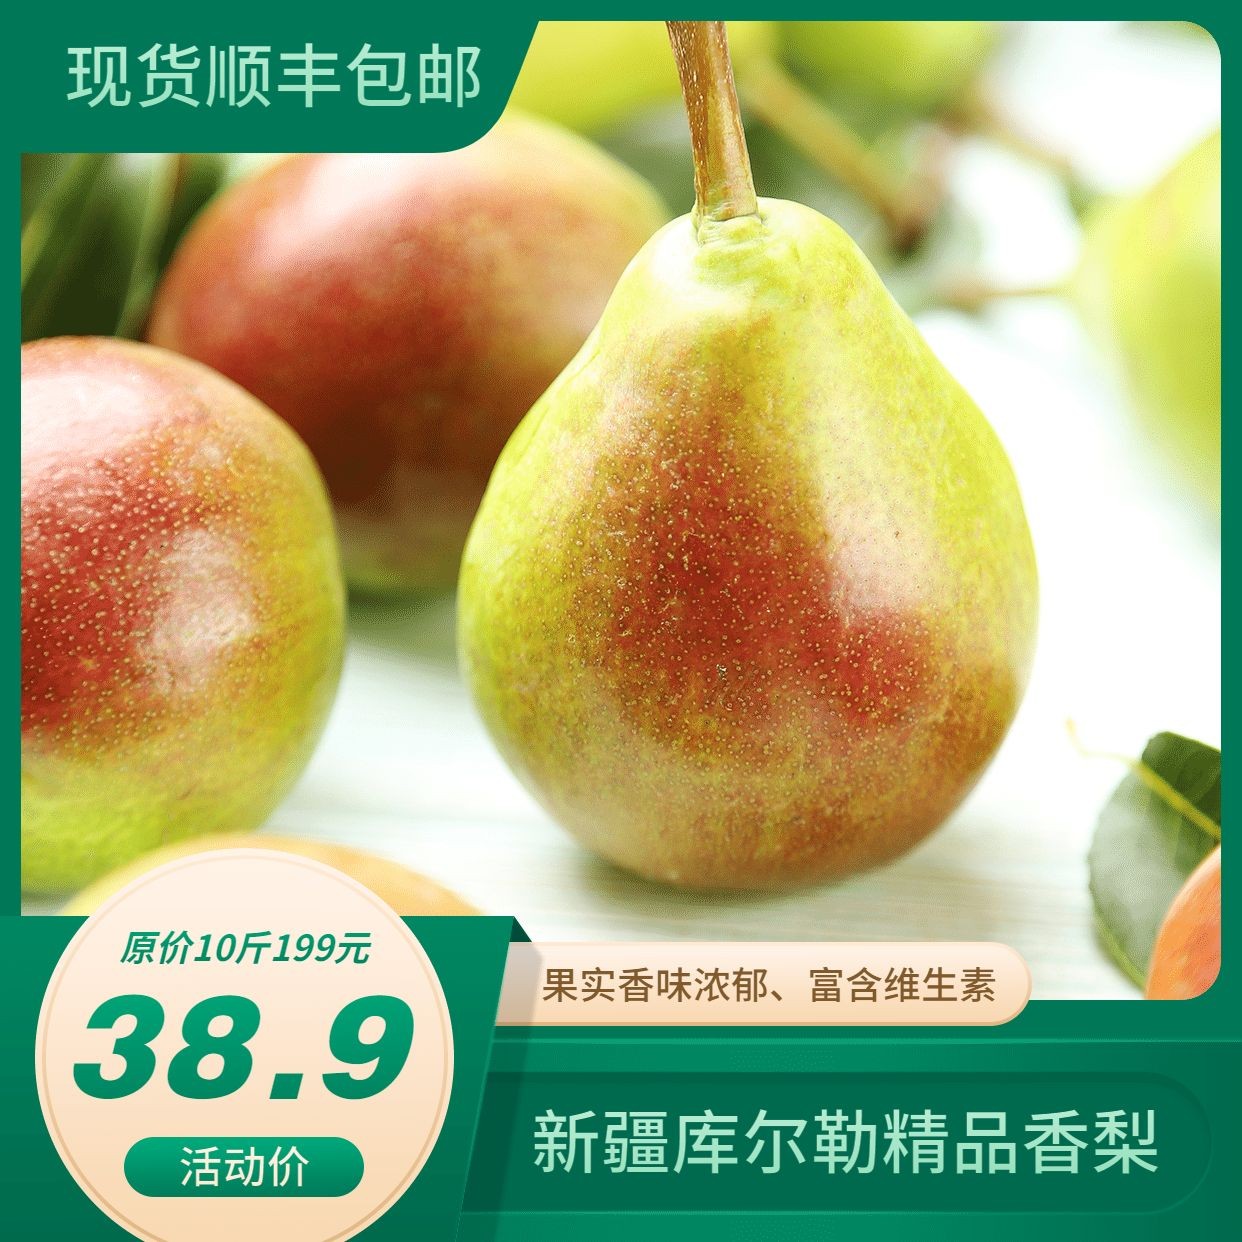 生鲜超市梨子图框展示方形营销海报预览效果